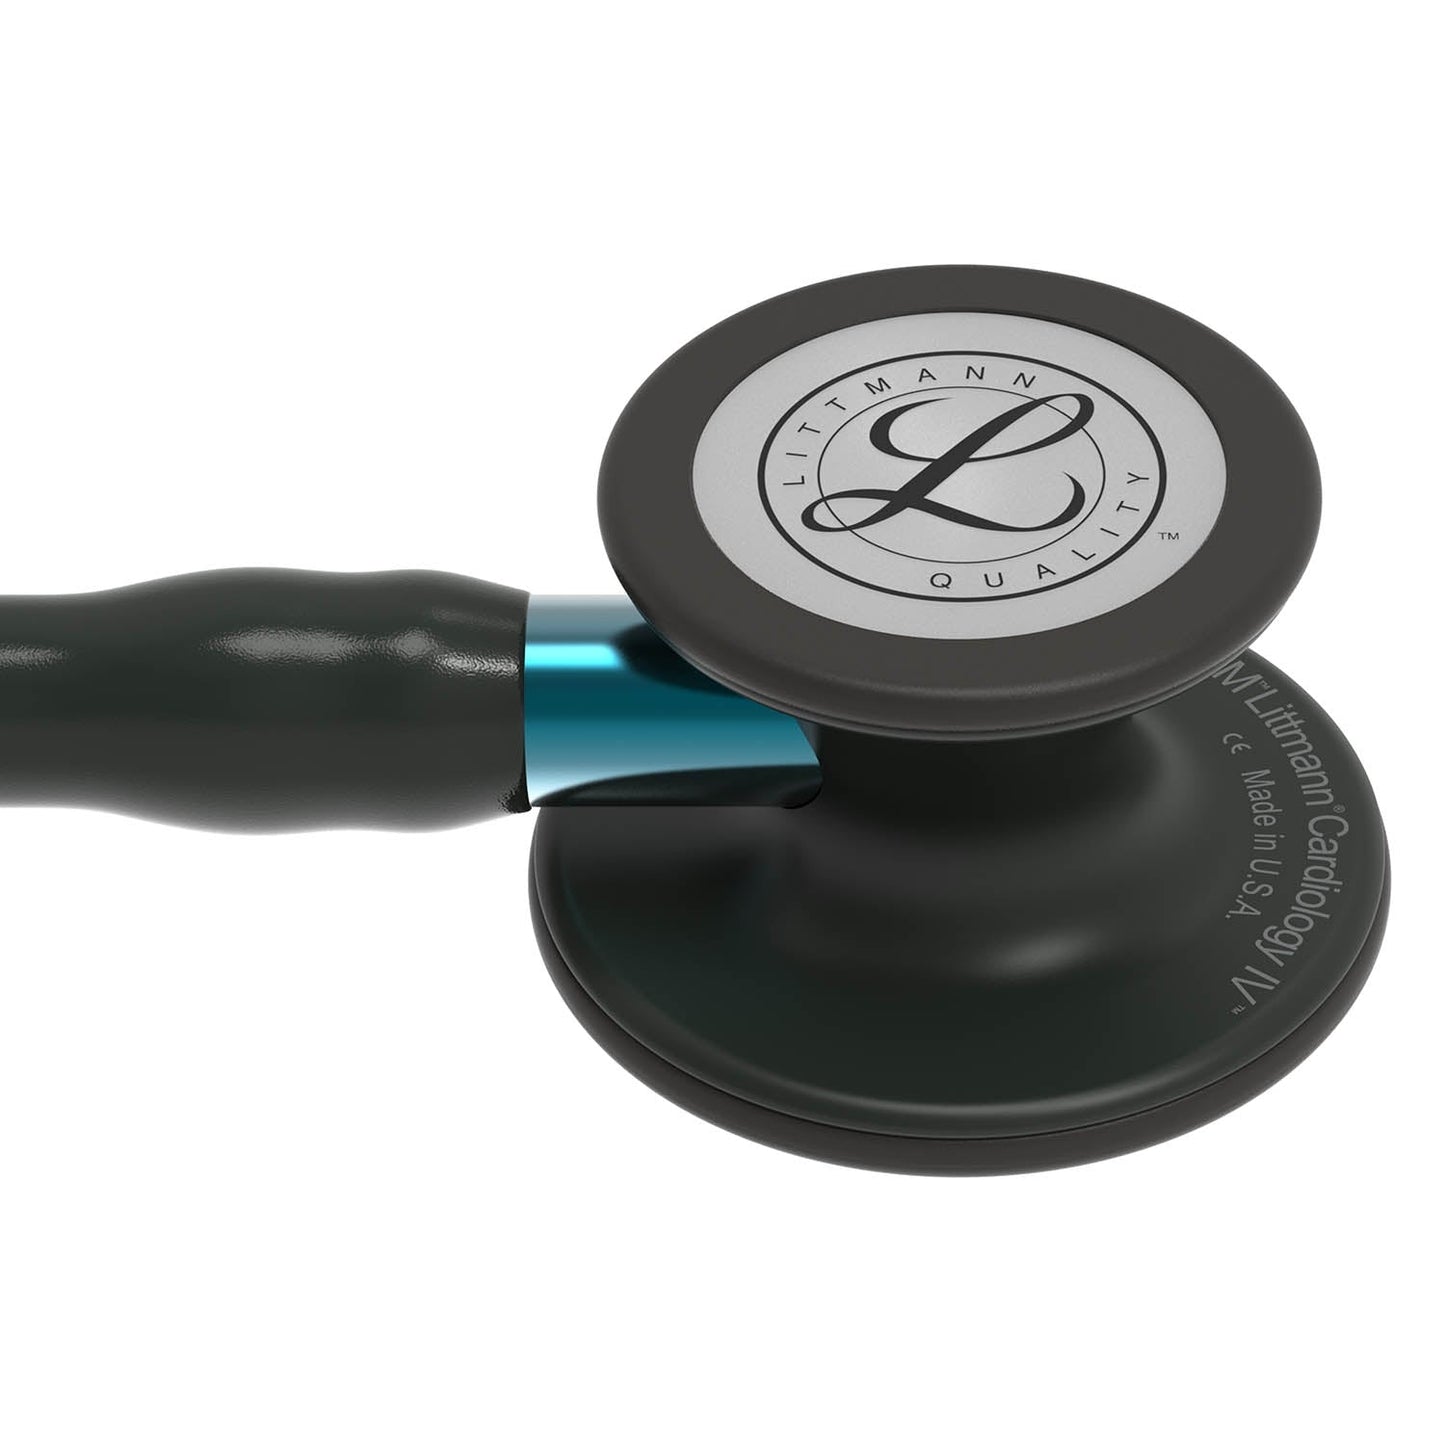 3M™ Littmann® Cardiology IV™ Fonendoscopio para diagnóstico, campana de acabado negro, tubo y auricular en color negro y vástago azul, 68,5 cm, 6201